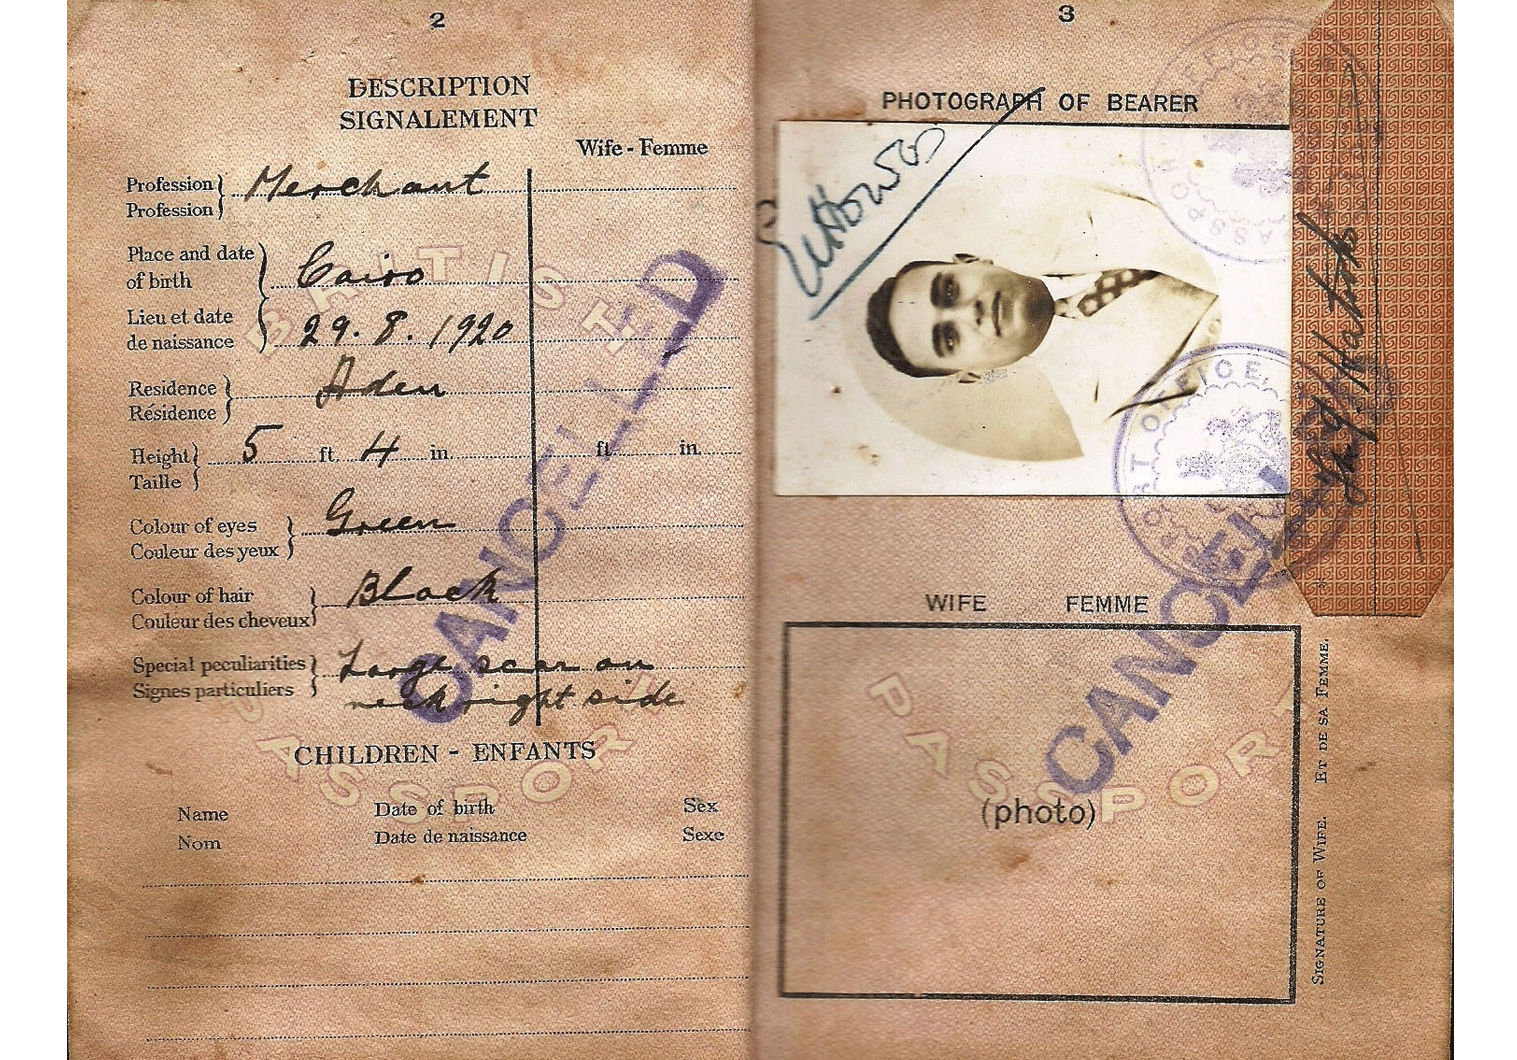 Aden Protectorate passport